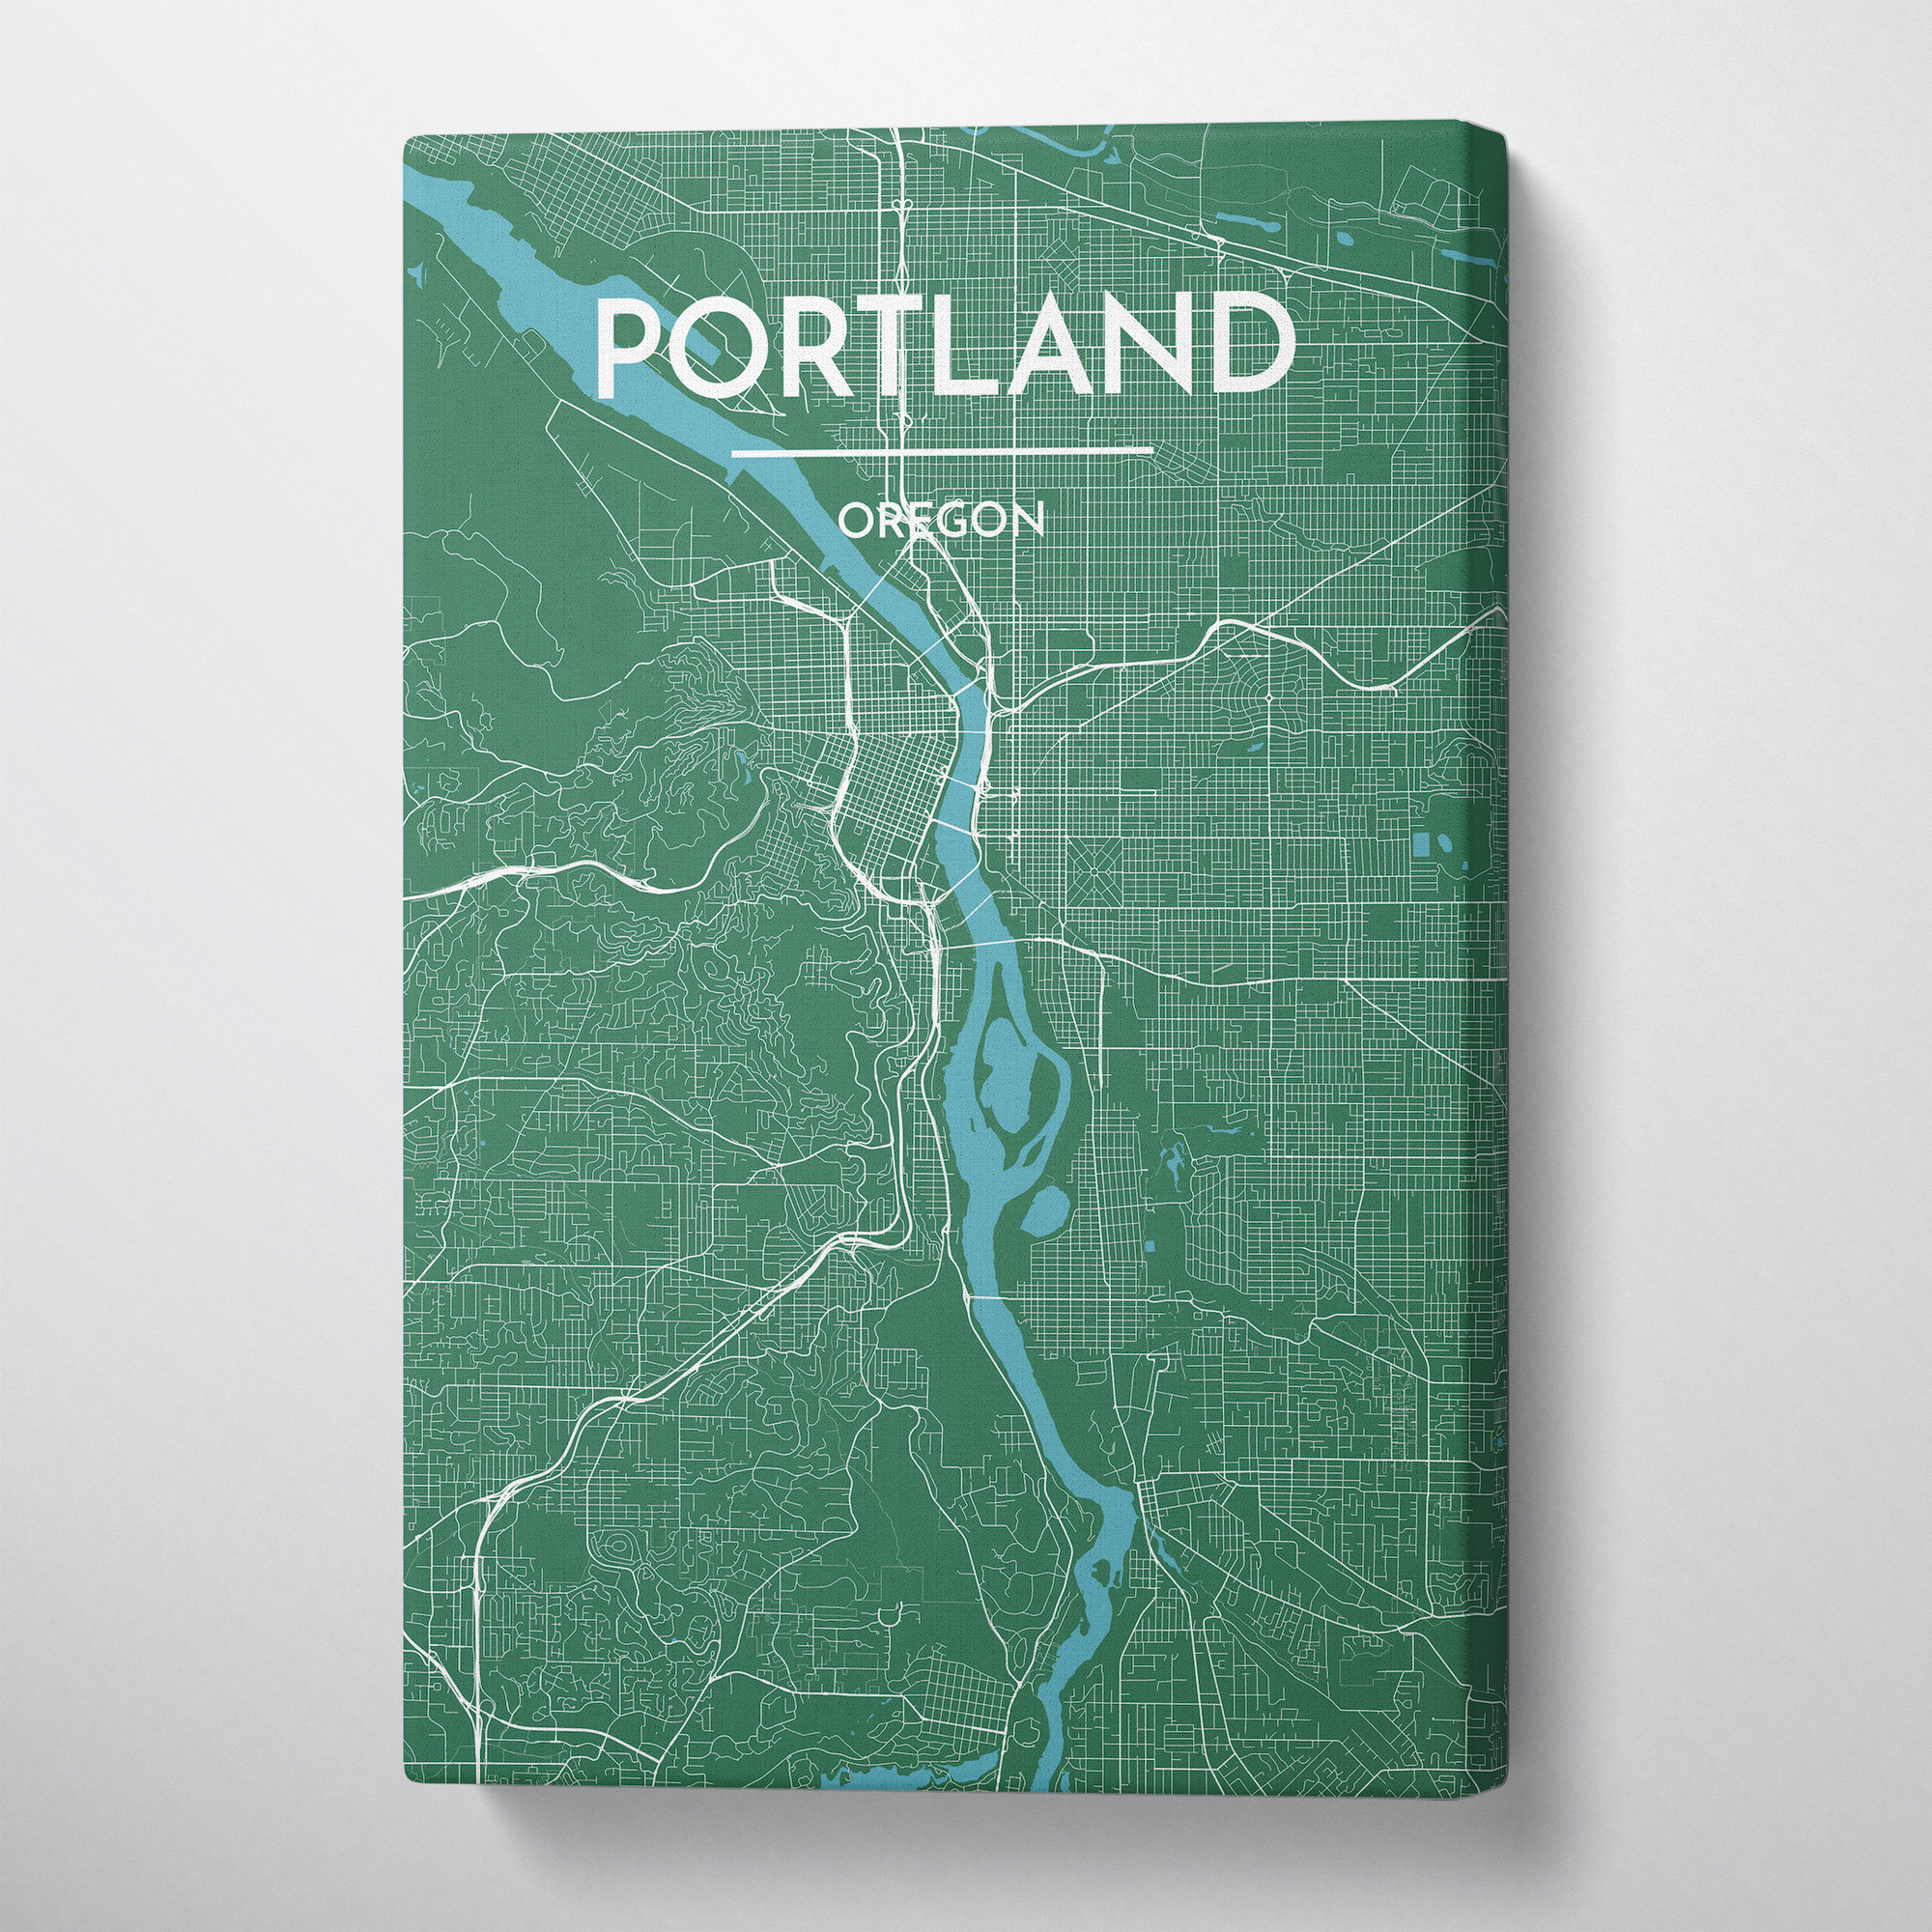 Portland - Oregon City Map Canvas Wrap - Point Two Design